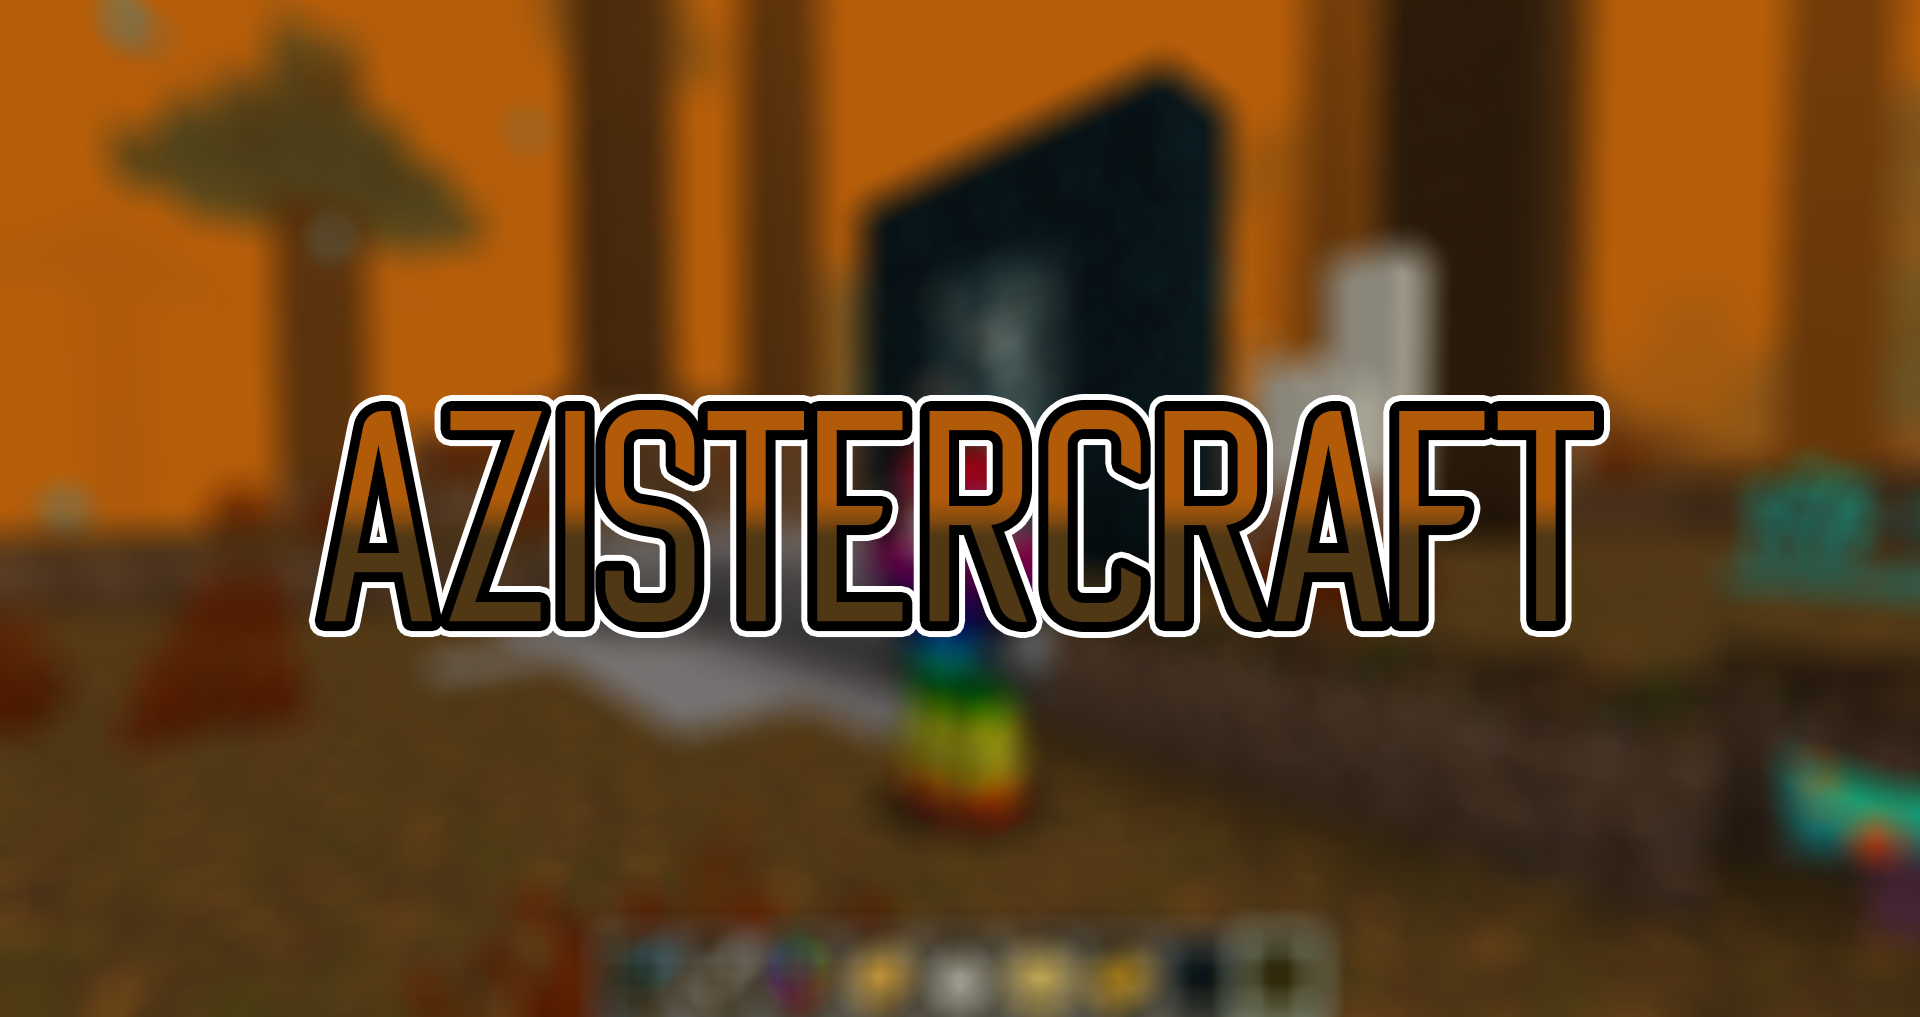 Azistercraft  screenshot 1